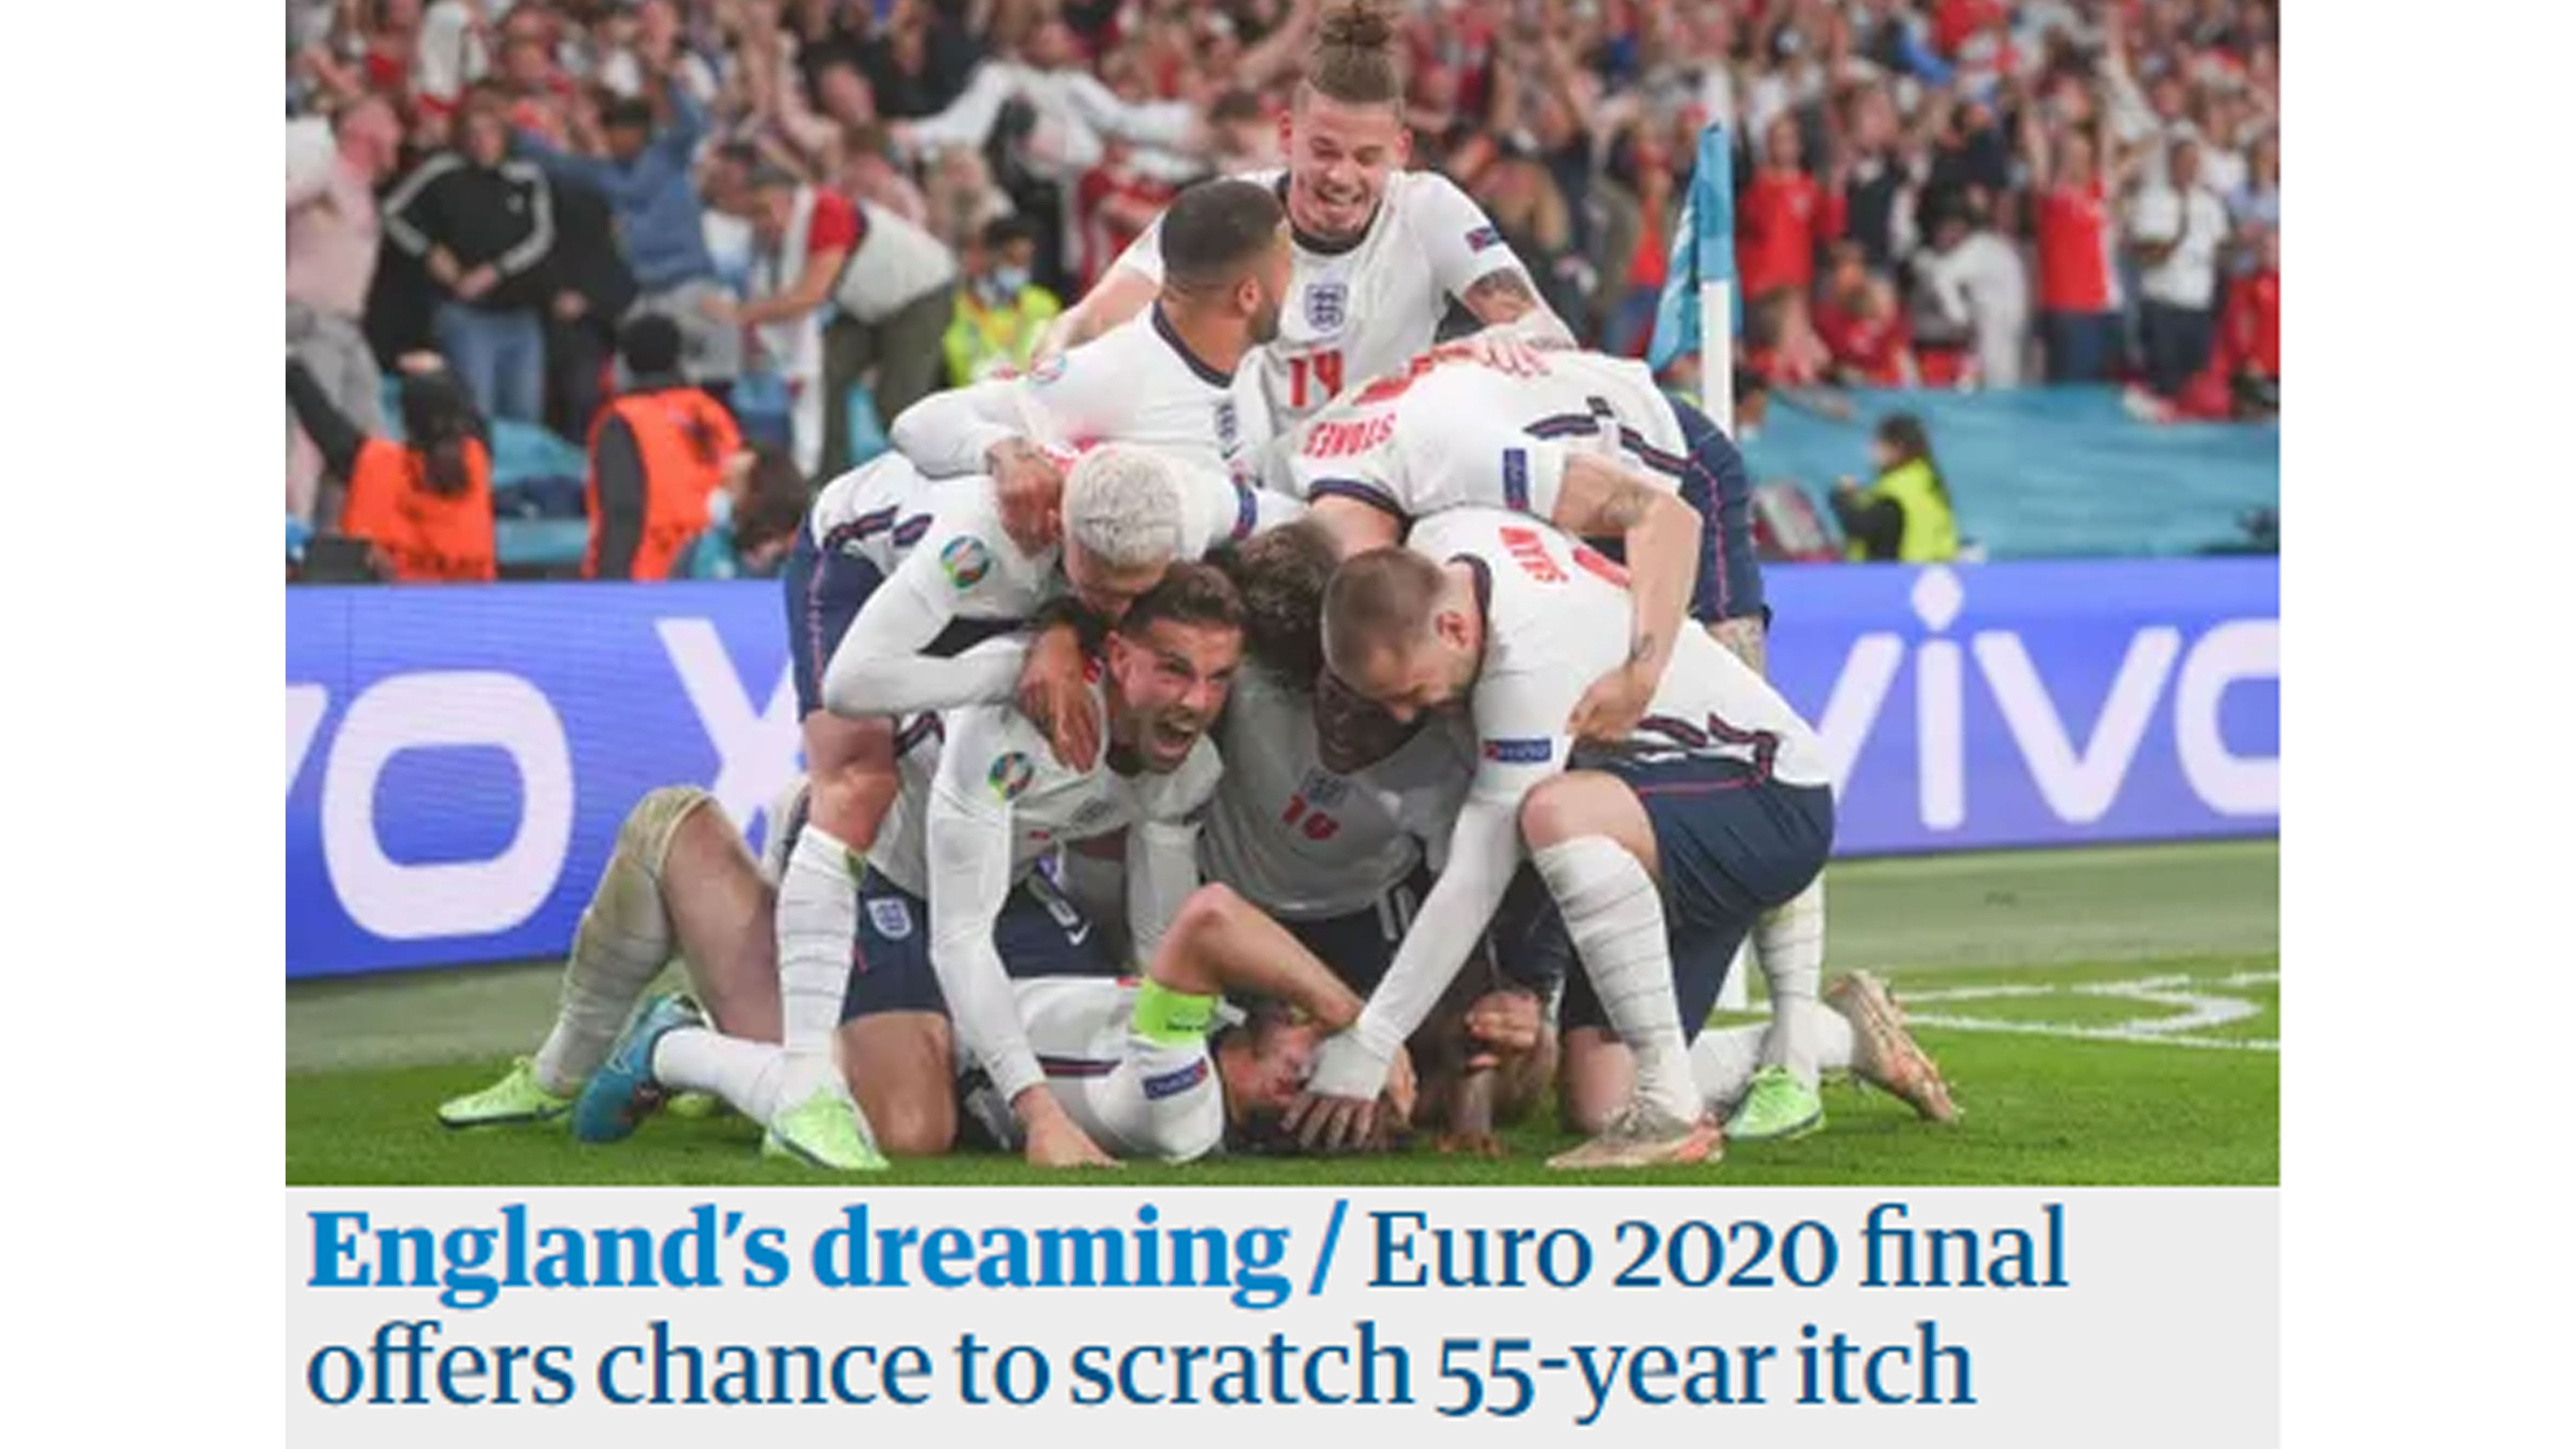 
                <strong>The Guardian: "England träumt!"</strong><br>
                "England träumt! Das Finale bürgt die Chance, eine 55 Jahre währenden Juckreiz zu kratzen". Interessantes Bild. 
              